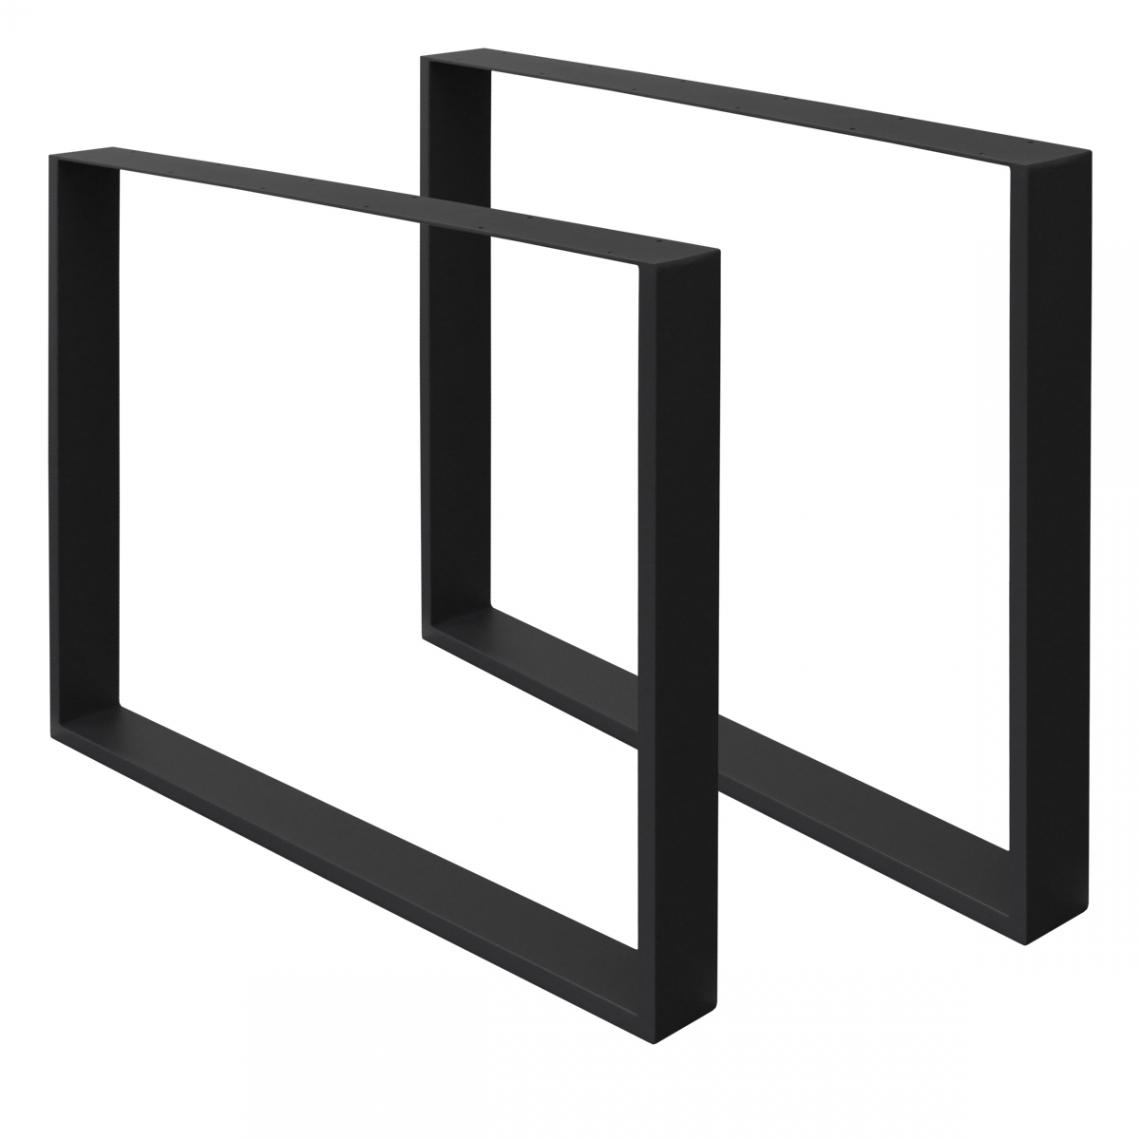 Ecd Germany - 2 x Pieds de table en acier noir 80 x 72 cm support rectangulaire style moderne - Pieds & roulettes pour meuble